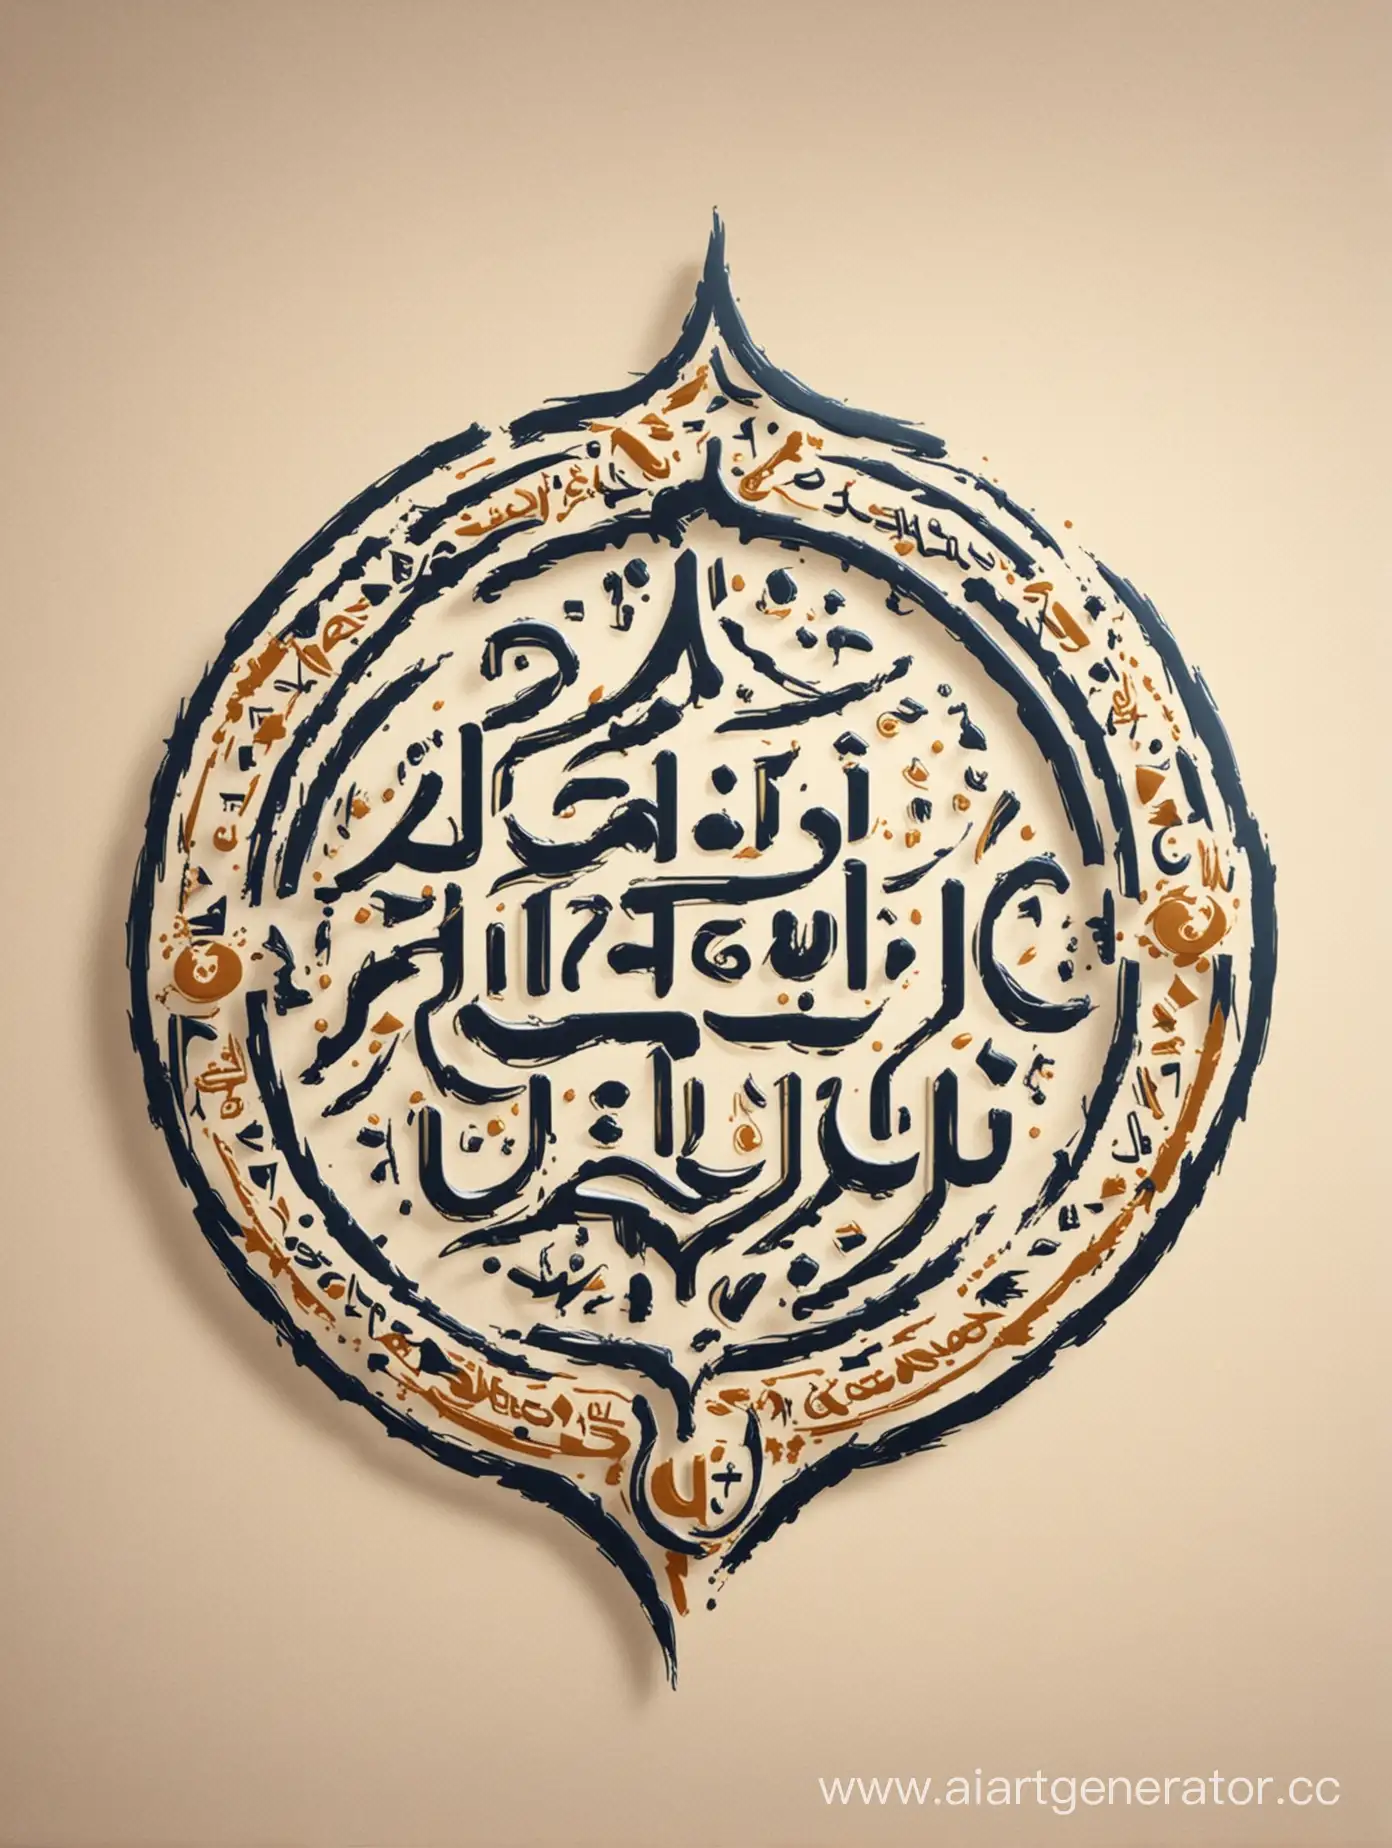 Modern-Arabic-Language-Learning-Club-Logo-with-Eastern-Stylistic-Elements